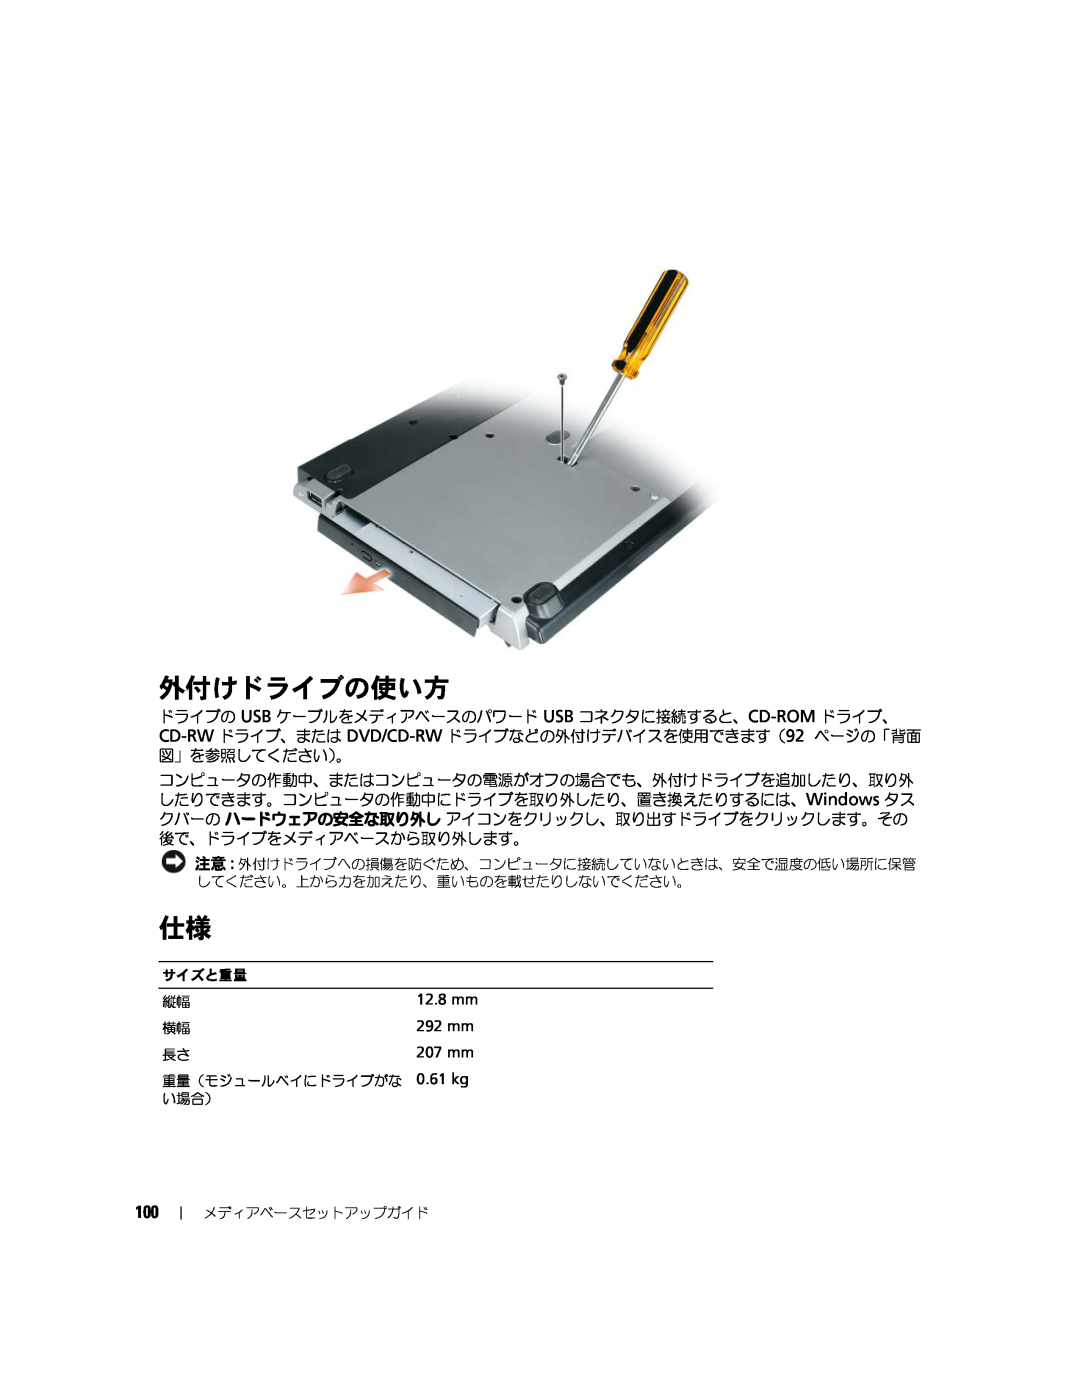 Dell Model PR09S setup guide 外付けドライブの使い方, 292 mm, 207 mm 